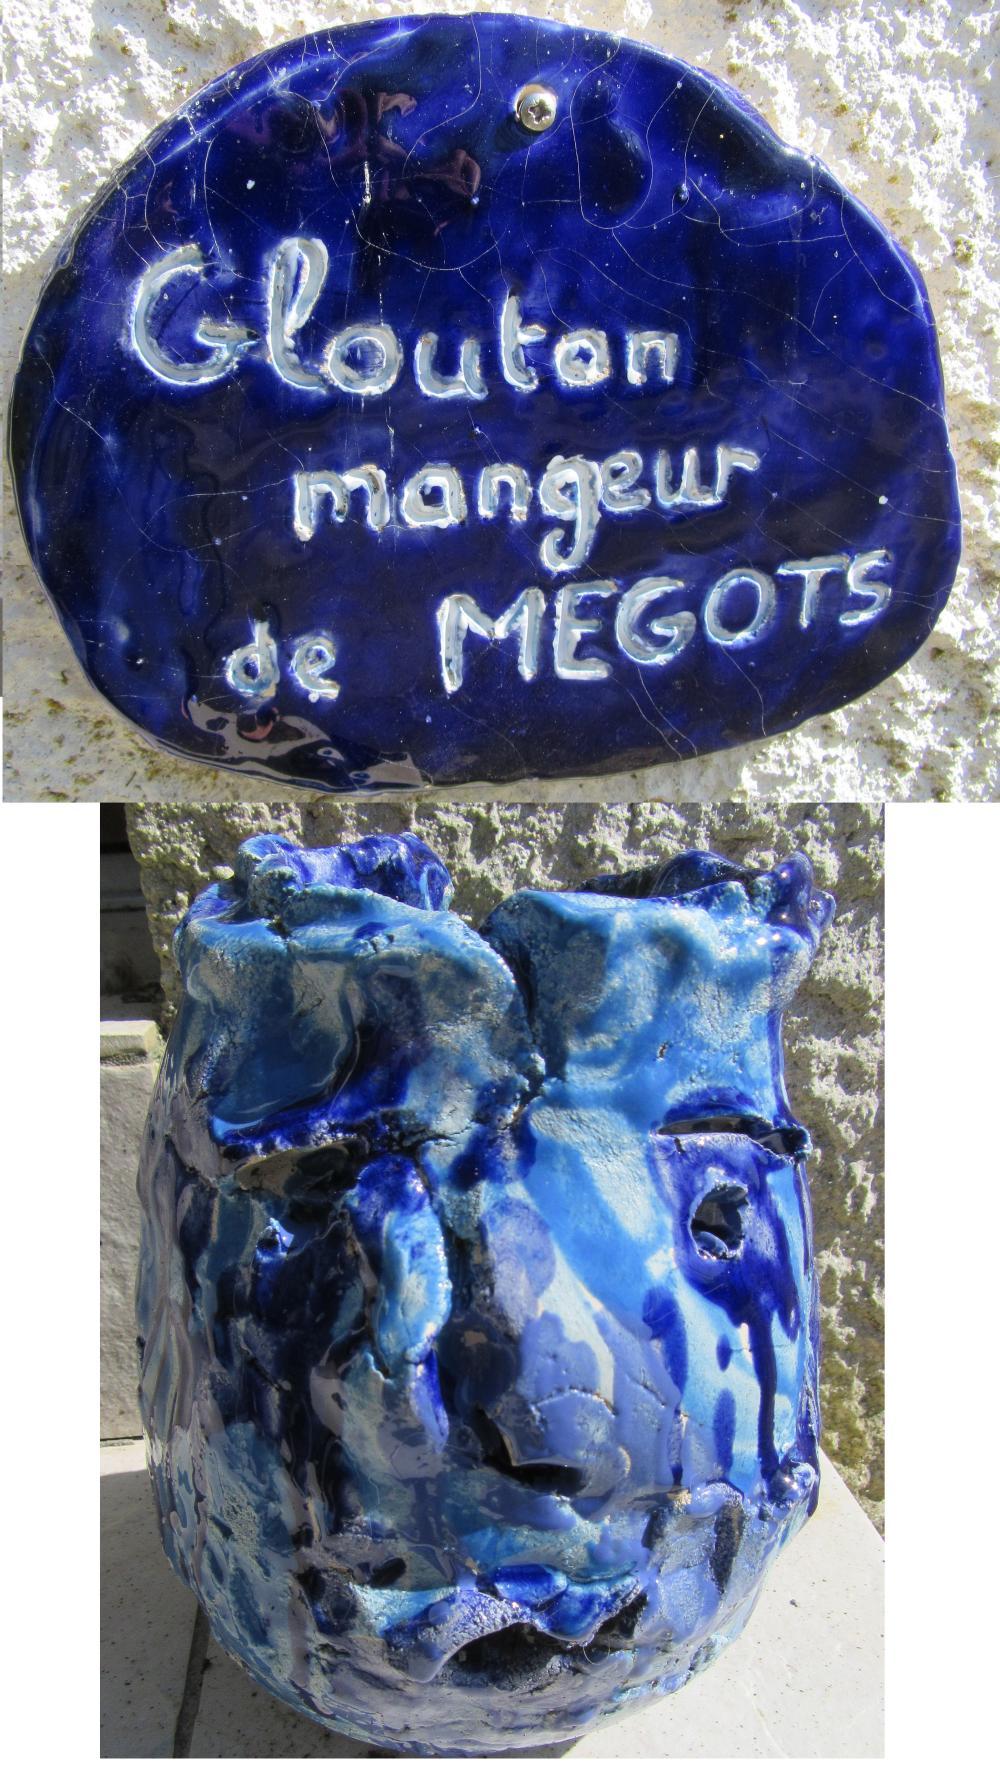 GLOUTON MANGEUR DE MEGOTS